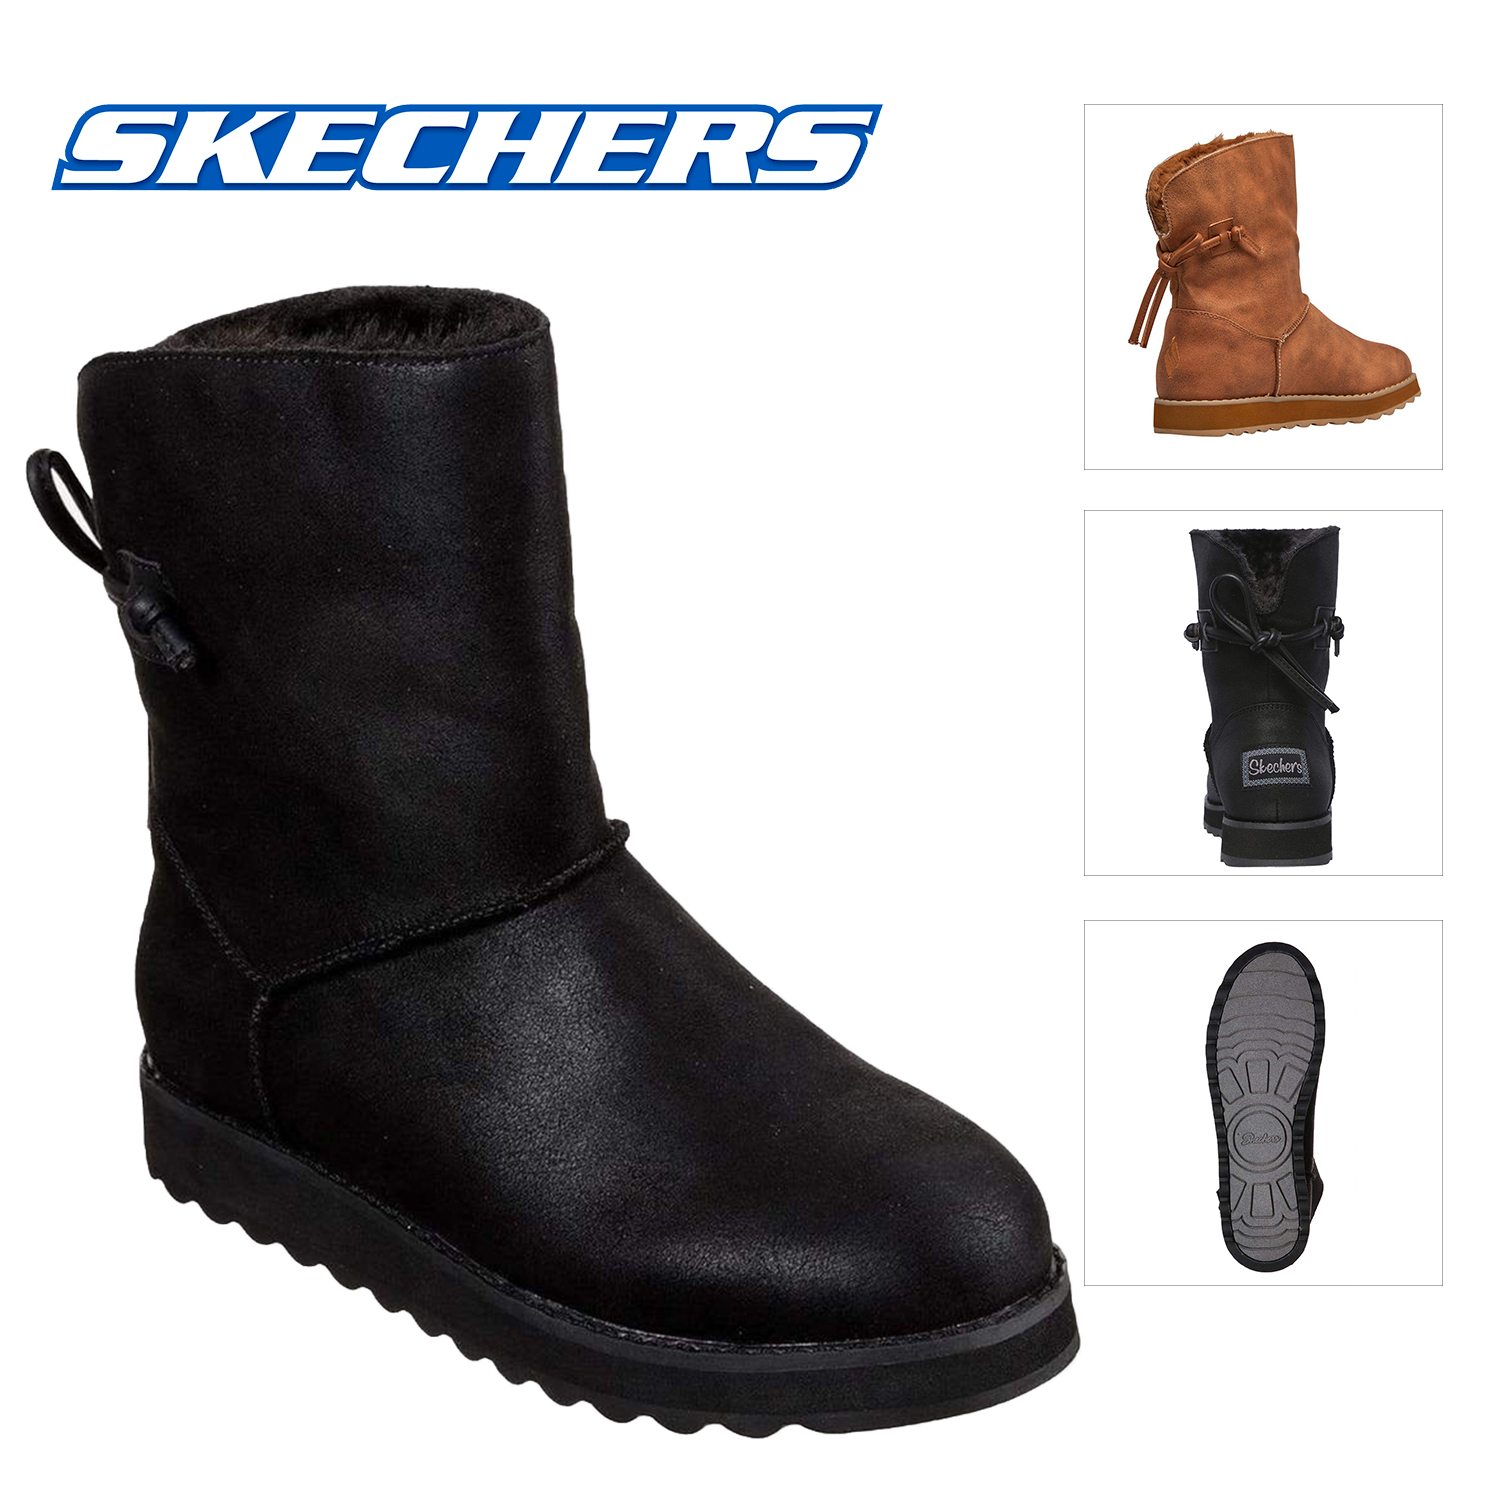 skechers women's keepsake boots